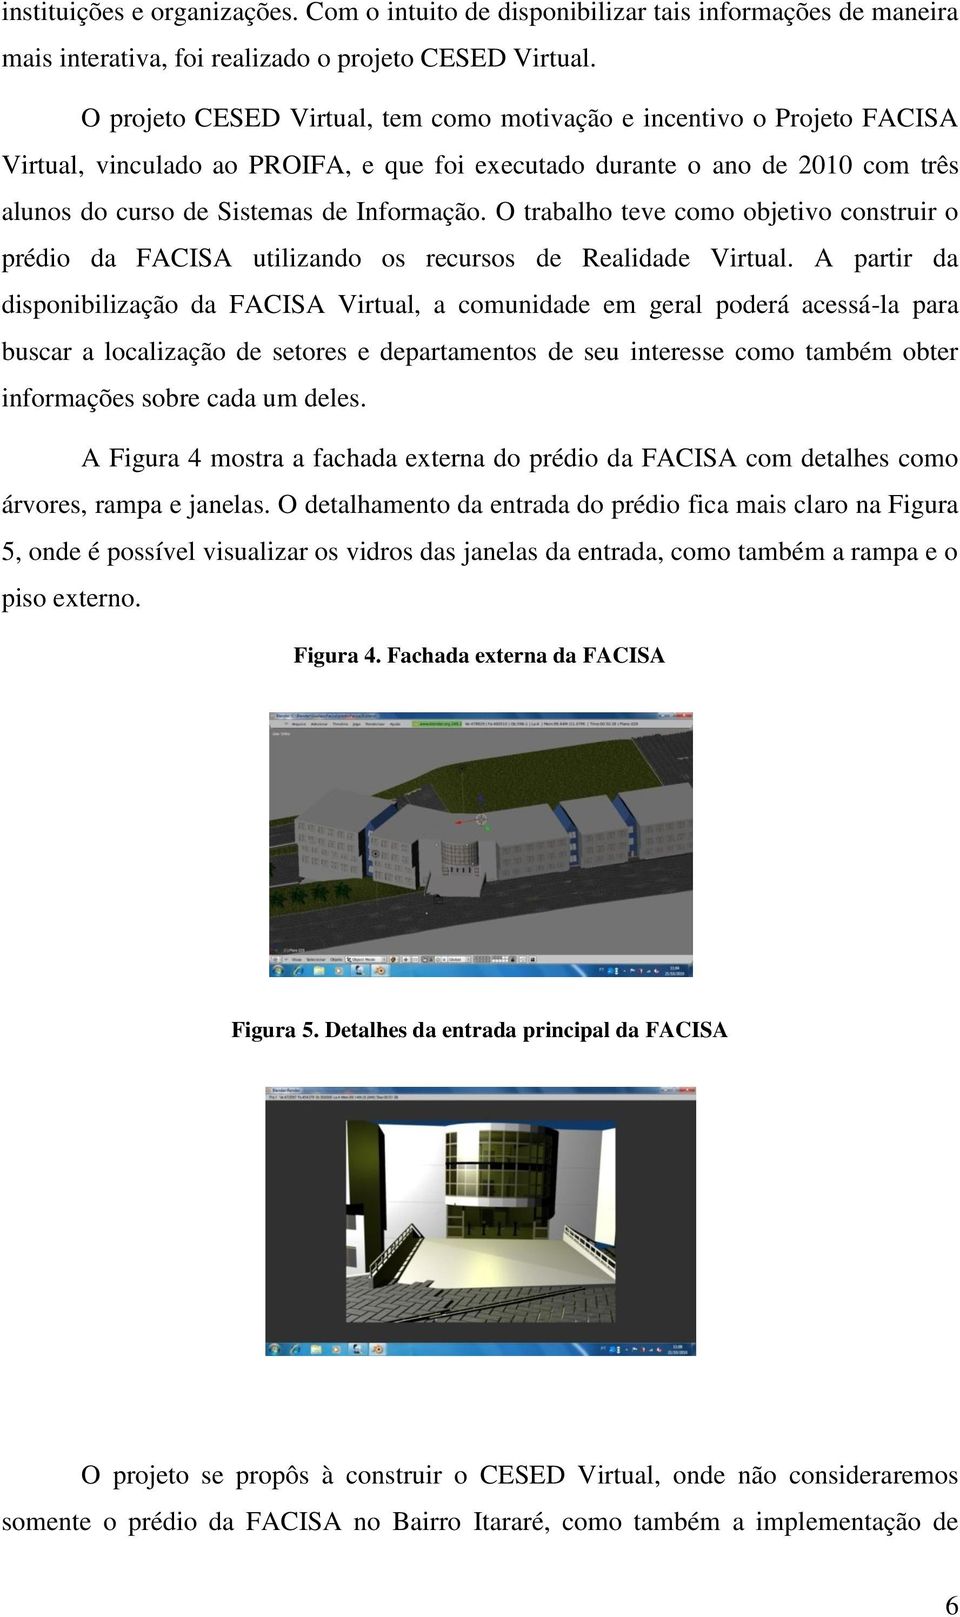 O trabalho teve como objetivo construir o prédio da FACISA utilizando os recursos de Realidade Virtual.